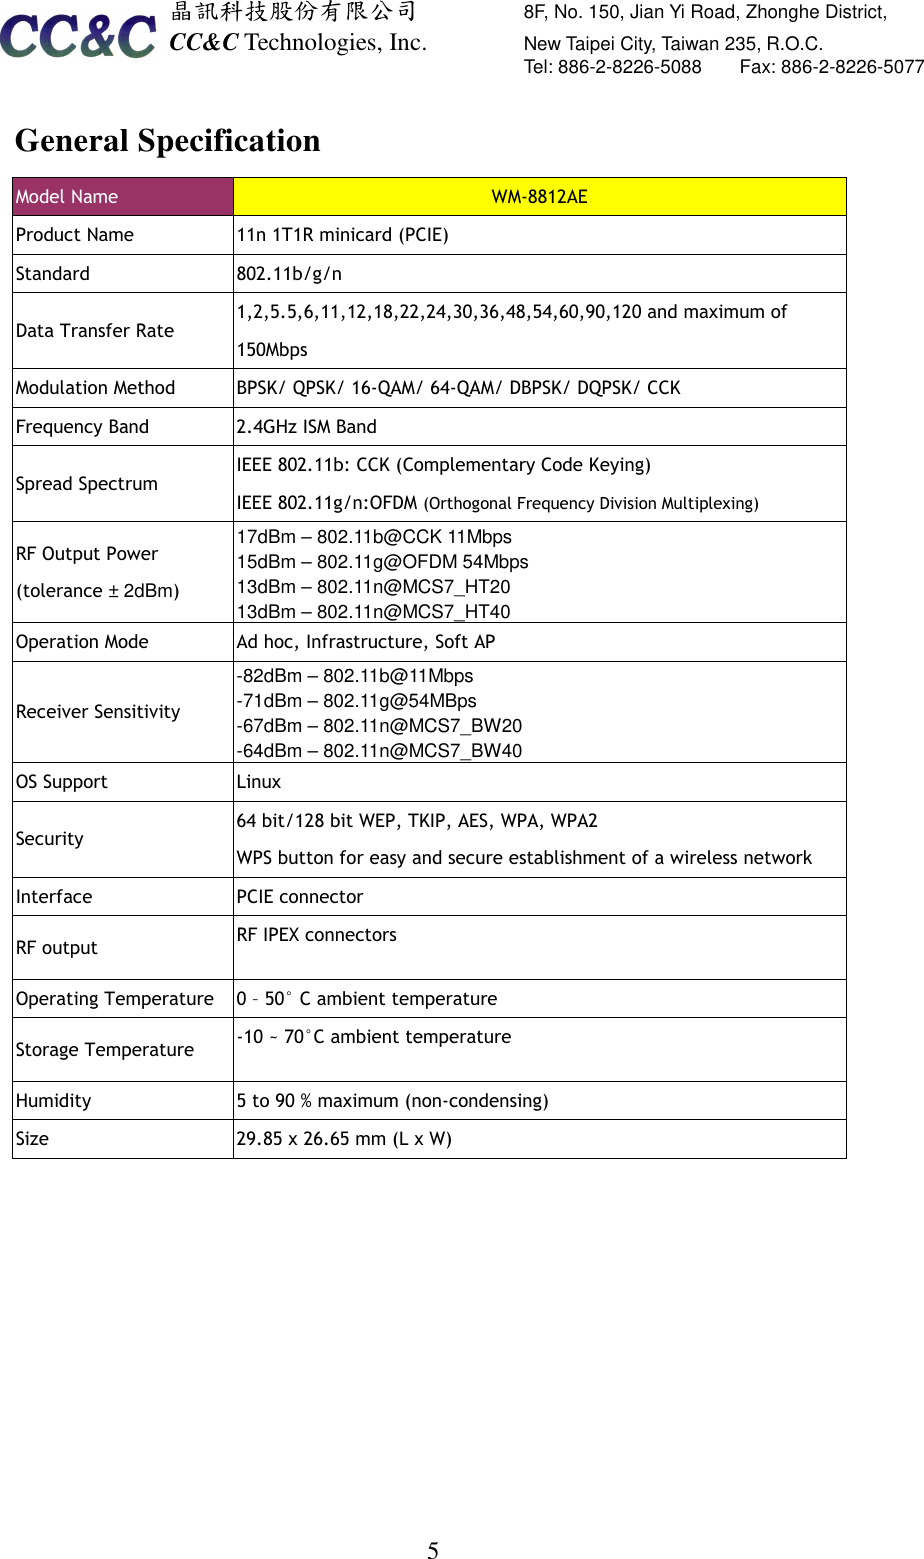  晶訊科技股份有限公司         8F, No. 150, Jian Yi Road, Zhonghe District,   CC&amp;C Technologies, Inc.               New Taipei City, Taiwan 235, R.O.C.   Tel: 886-2-8226-5088        Fax: 886-2-8226-5077   5General Specification Model Name  WM-8812AE Product Name    11n 1T1R minicard (PCIE) Standard    802.11b/g/n Data Transfer Rate   1,2,5.5,6,11,12,18,22,24,30,36,48,54,60,90,120 and maximum of 150Mbps Modulation Method    BPSK/ QPSK/ 16-QAM/ 64-QAM/ DBPSK/ DQPSK/ CCK Frequency Band    2.4GHz ISM Band Spread Spectrum IEEE 802.11b: CCK (Complementary Code Keying) IEEE 802.11g/n:OFDM (Orthogonal Frequency Division Multiplexing) RF Output Power (tolerance ± 2dBm) 17dBm – 802.11b@CCK 11Mbps 15dBm – 802.11g@OFDM 54Mbps 13dBm – 802.11n@MCS7_HT20 13dBm – 802.11n@MCS7_HT40 Operation Mode  Ad hoc, Infrastructure, Soft AP Receiver Sensitivity   -82dBm – 802.11b@11Mbps   -71dBm – 802.11g@54MBps -67dBm – 802.11n@MCS7_BW20 -64dBm – 802.11n@MCS7_BW40 OS Support  Linux Security   64 bit/128 bit WEP, TKIP, AES, WPA, WPA2 WPS button for easy and secure establishment of a wireless network Interface    PCIE connector RF output  RF IPEX connectors Operating Temperature    0 – 50° C ambient temperature Storage Temperature    -10 ~ 70°C ambient temperature Humidity    5 to 90 % maximum (non-condensing) Size  29.85 x 26.65 mm (L x W)     